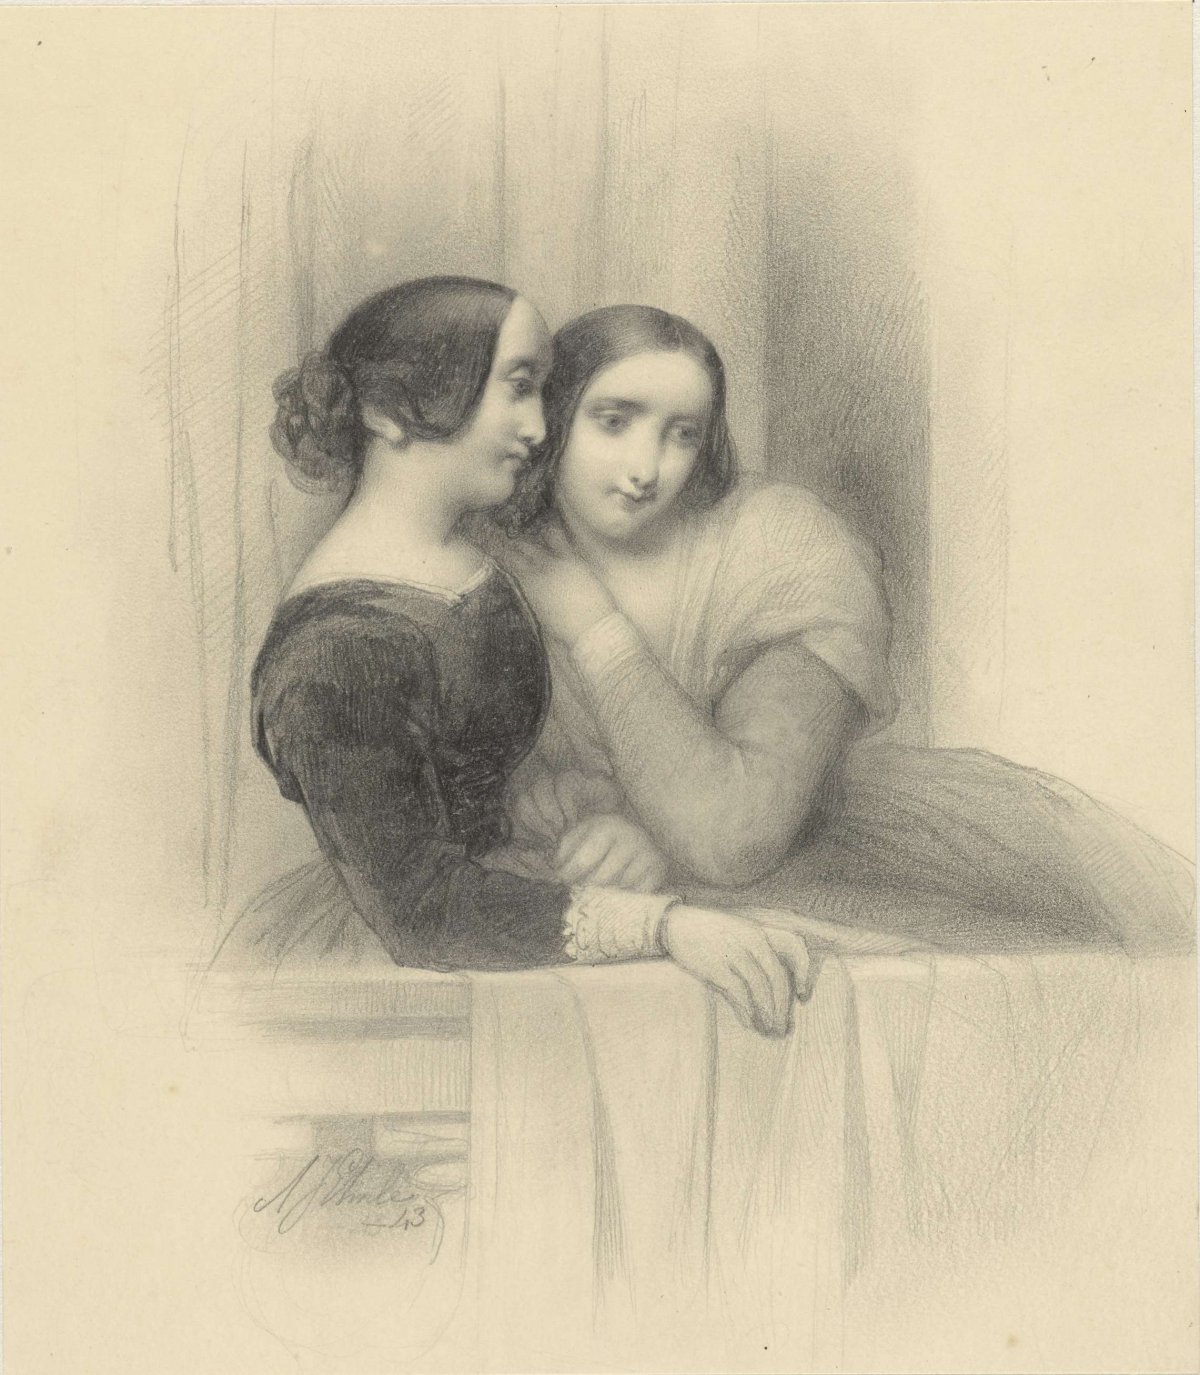 Two ladies on a balcony, Adrianus Johannes Ehnle, 1843